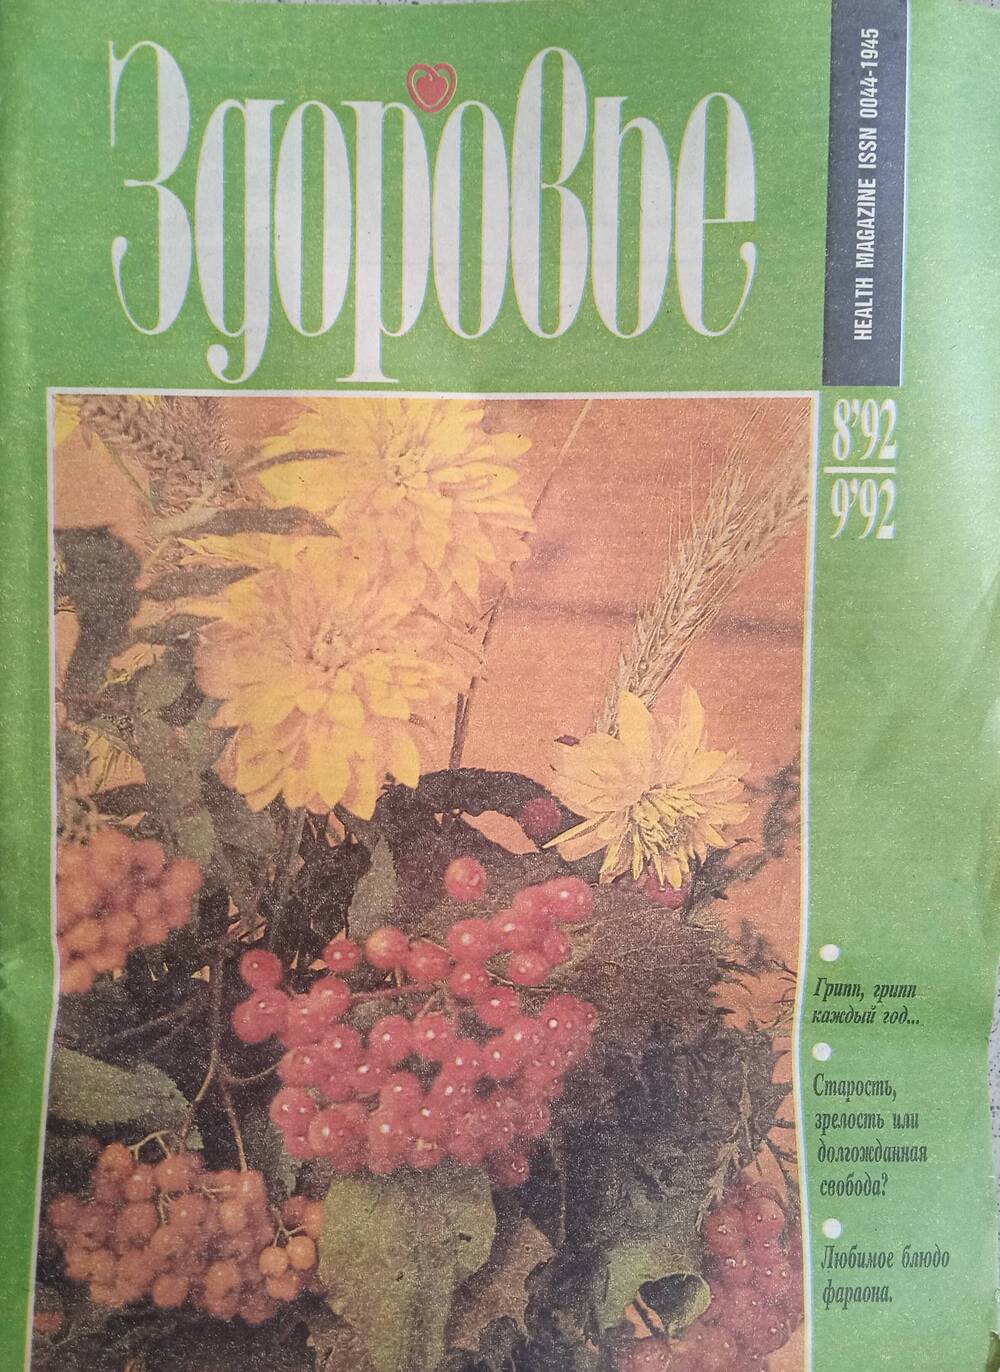 Журнал «Здоровье» № 8-9. 1992 год.